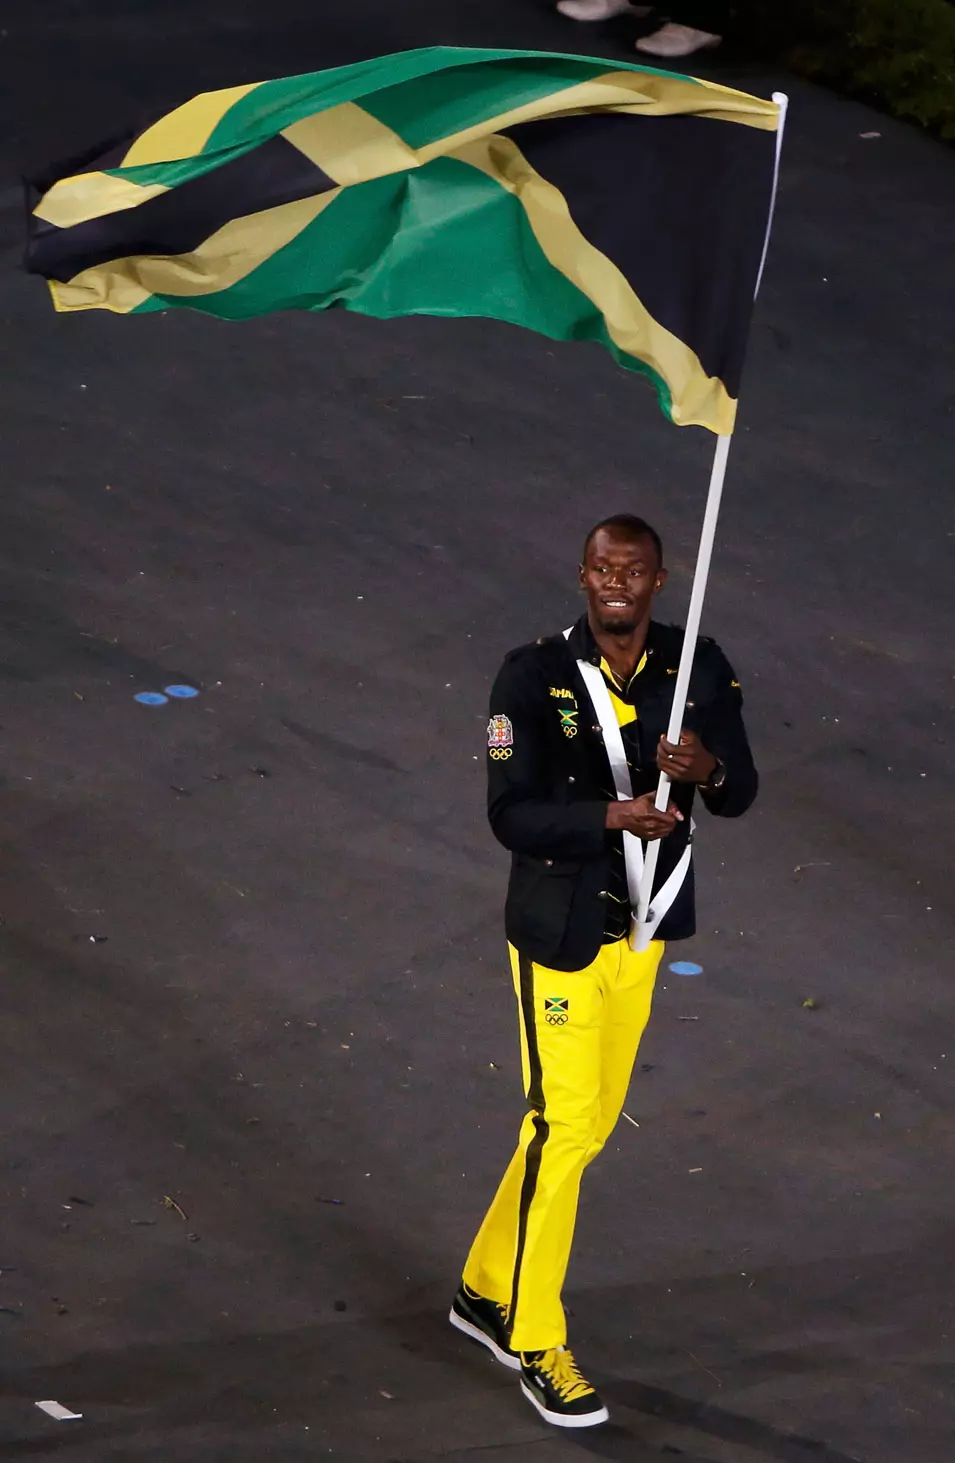 יוסאין בולט נושא את דגל ג'מייקה בטקס הפתיחה של אולימפיאדת לונדון 2012